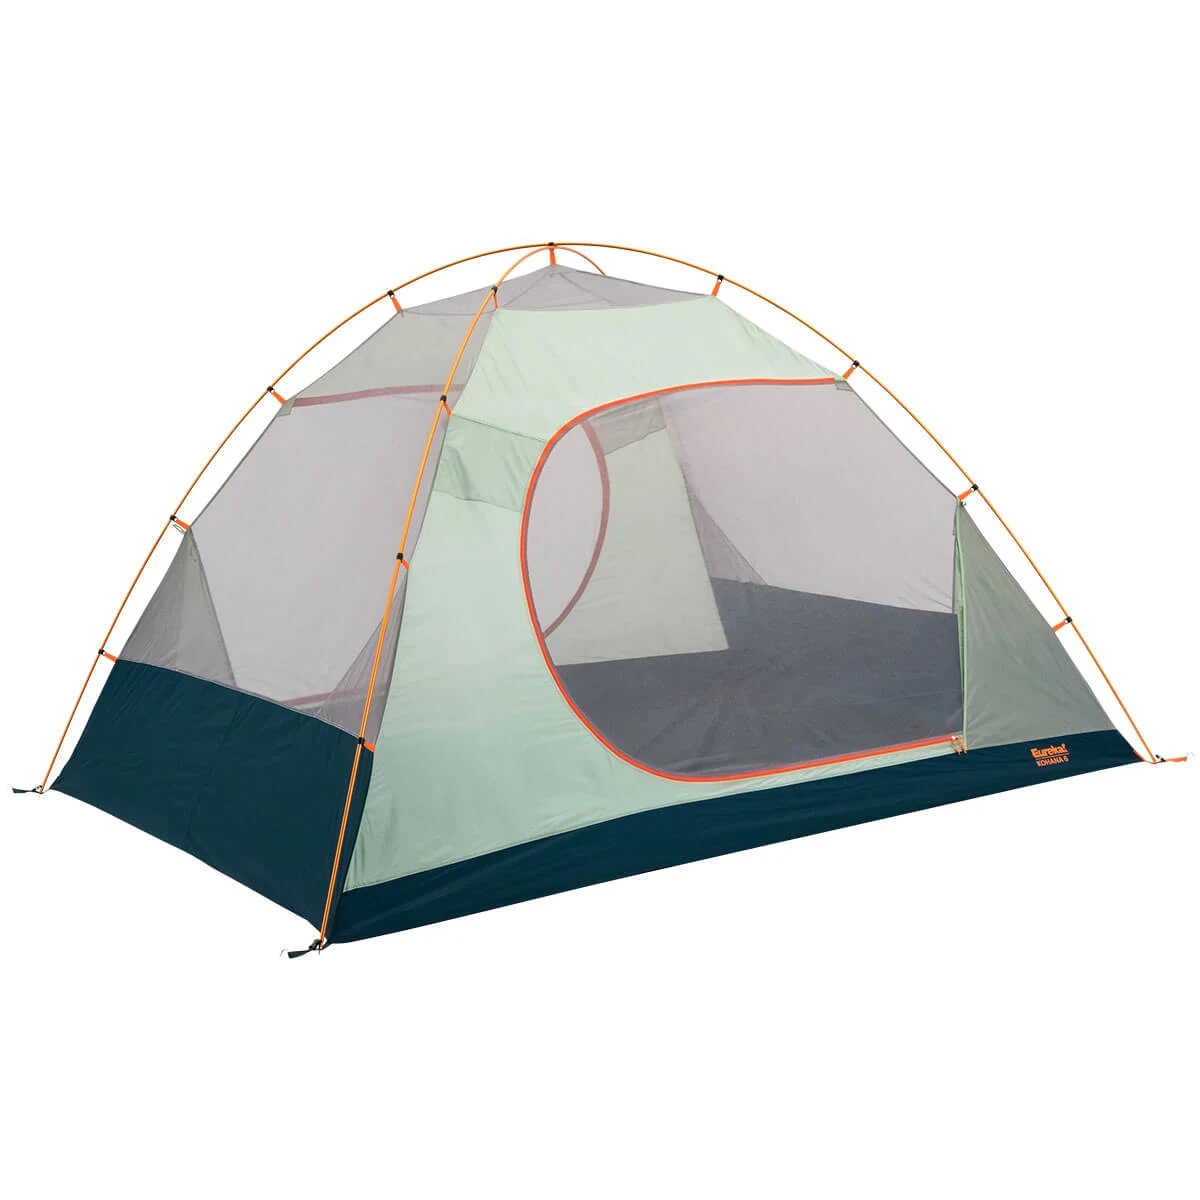 Kohana 6 tent without rainfly